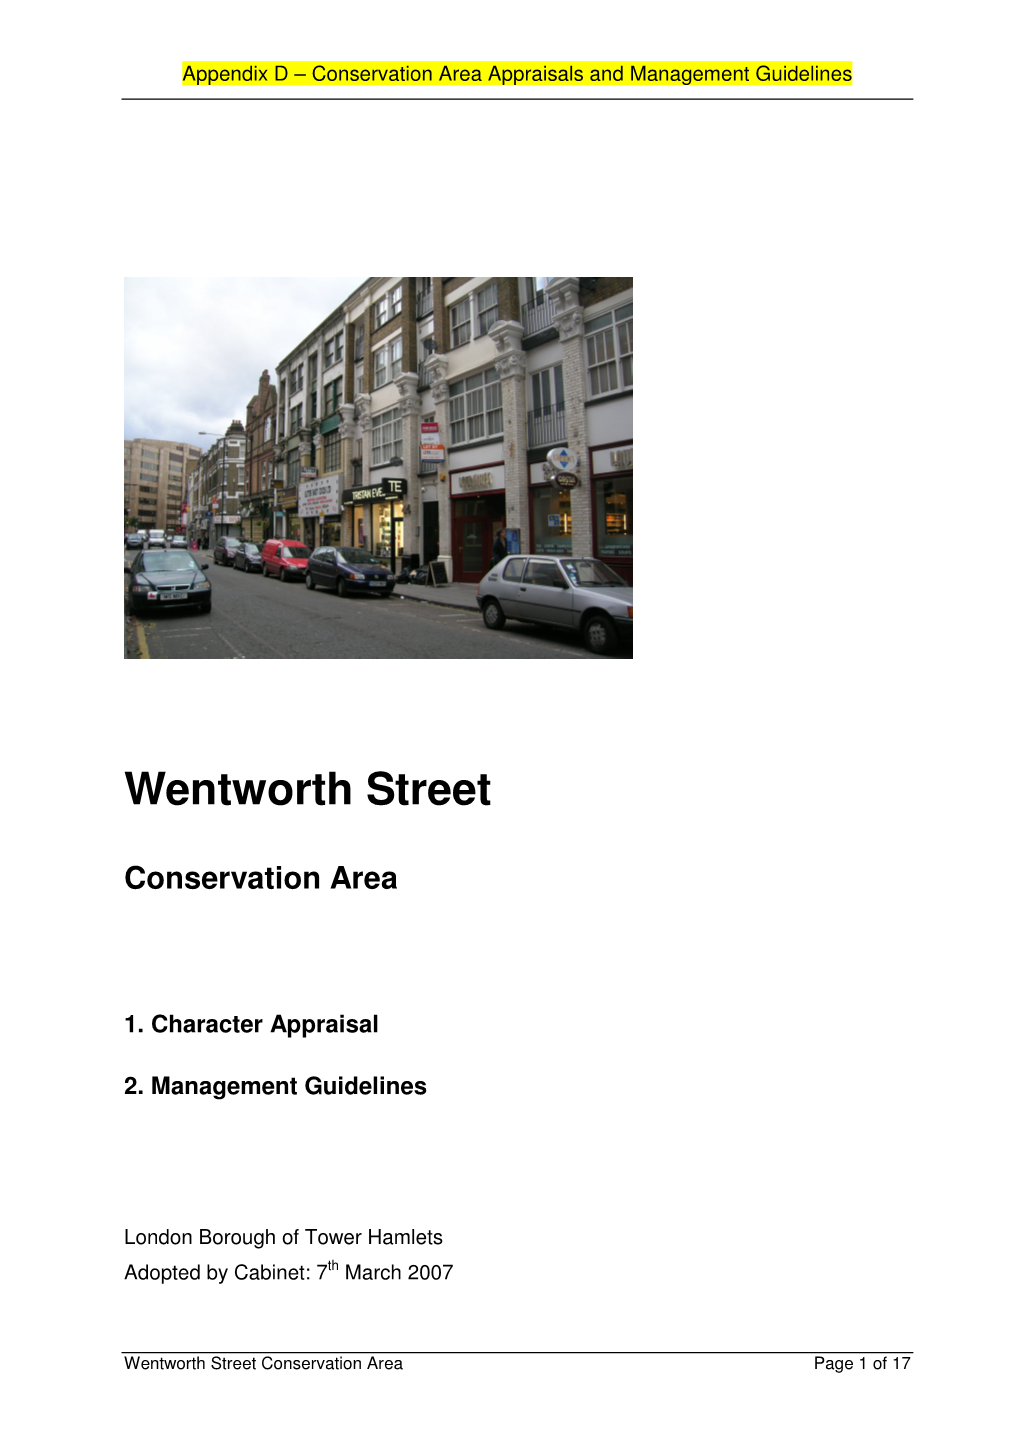 Wentworth Street